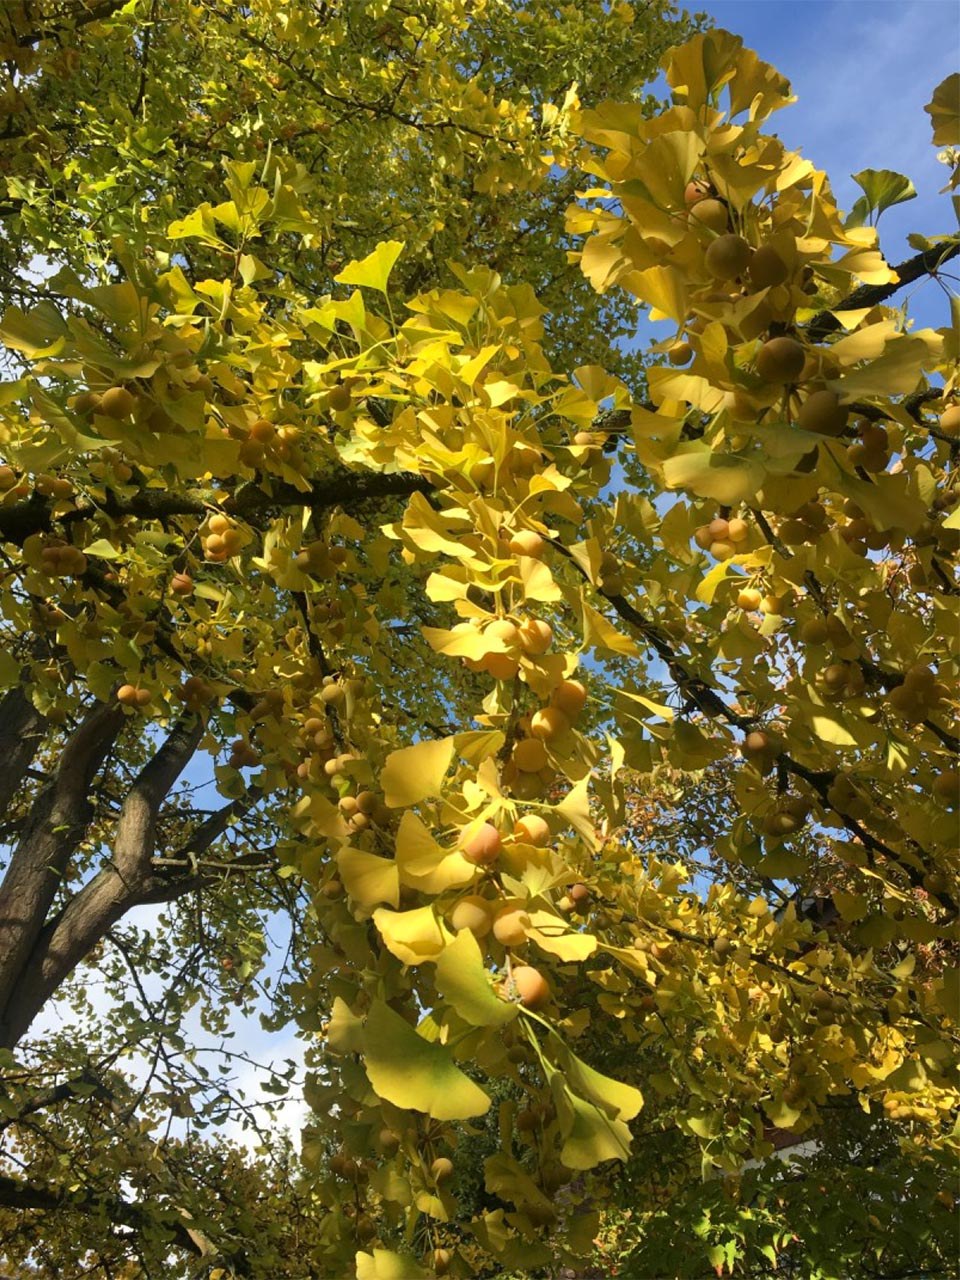 Goldener Oktober im Botanischen Garten der Stadt Neuss — Neuss am Rhein